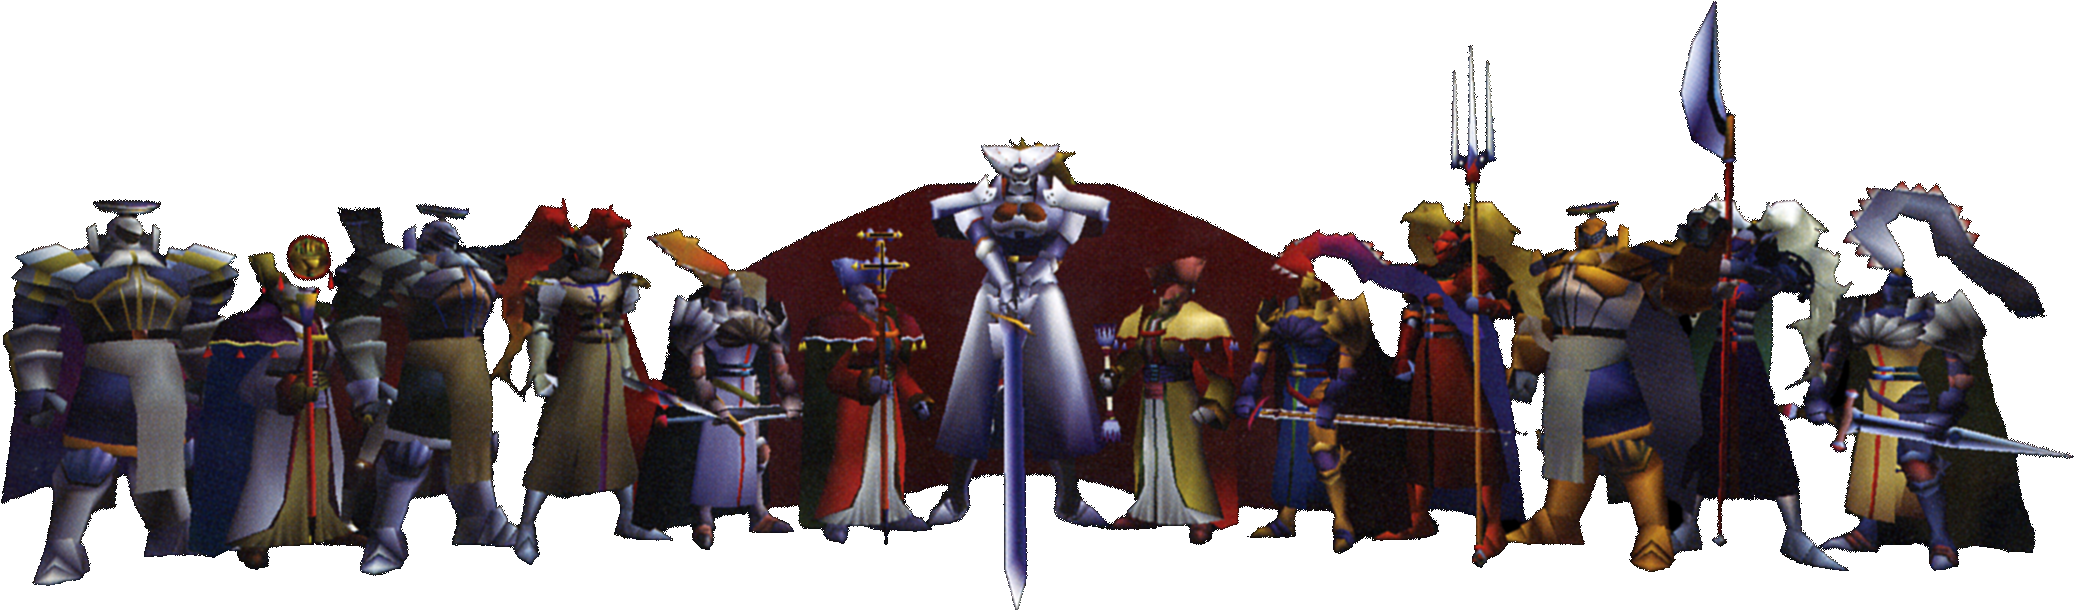 Knights Of Round Final Fantasy Vii Final Fantasy Wiki Fandom